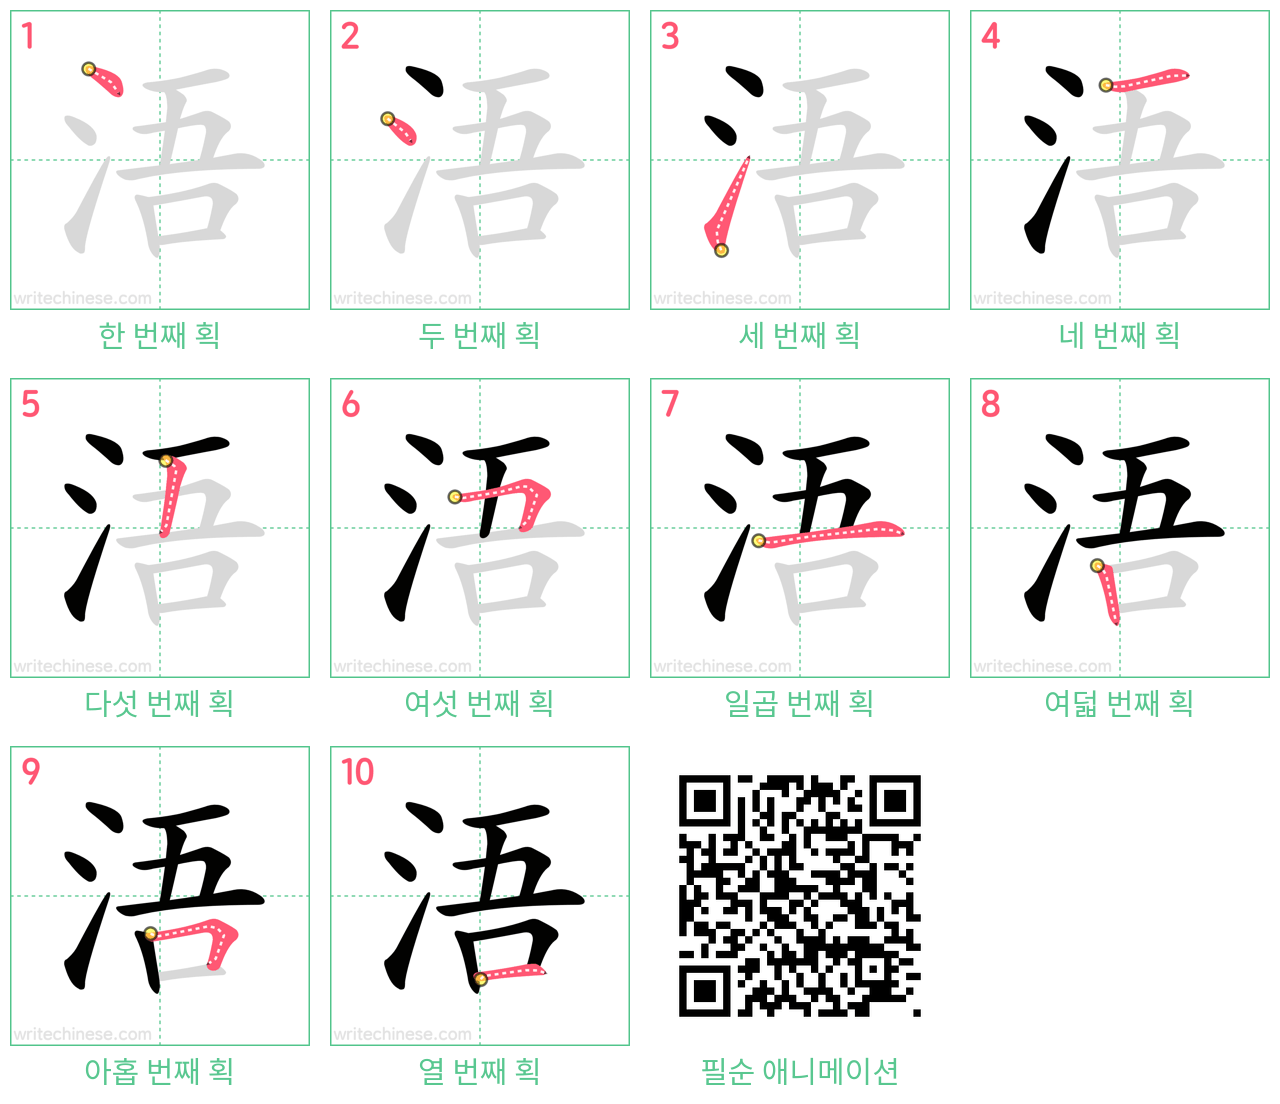 浯 step-by-step stroke order diagrams